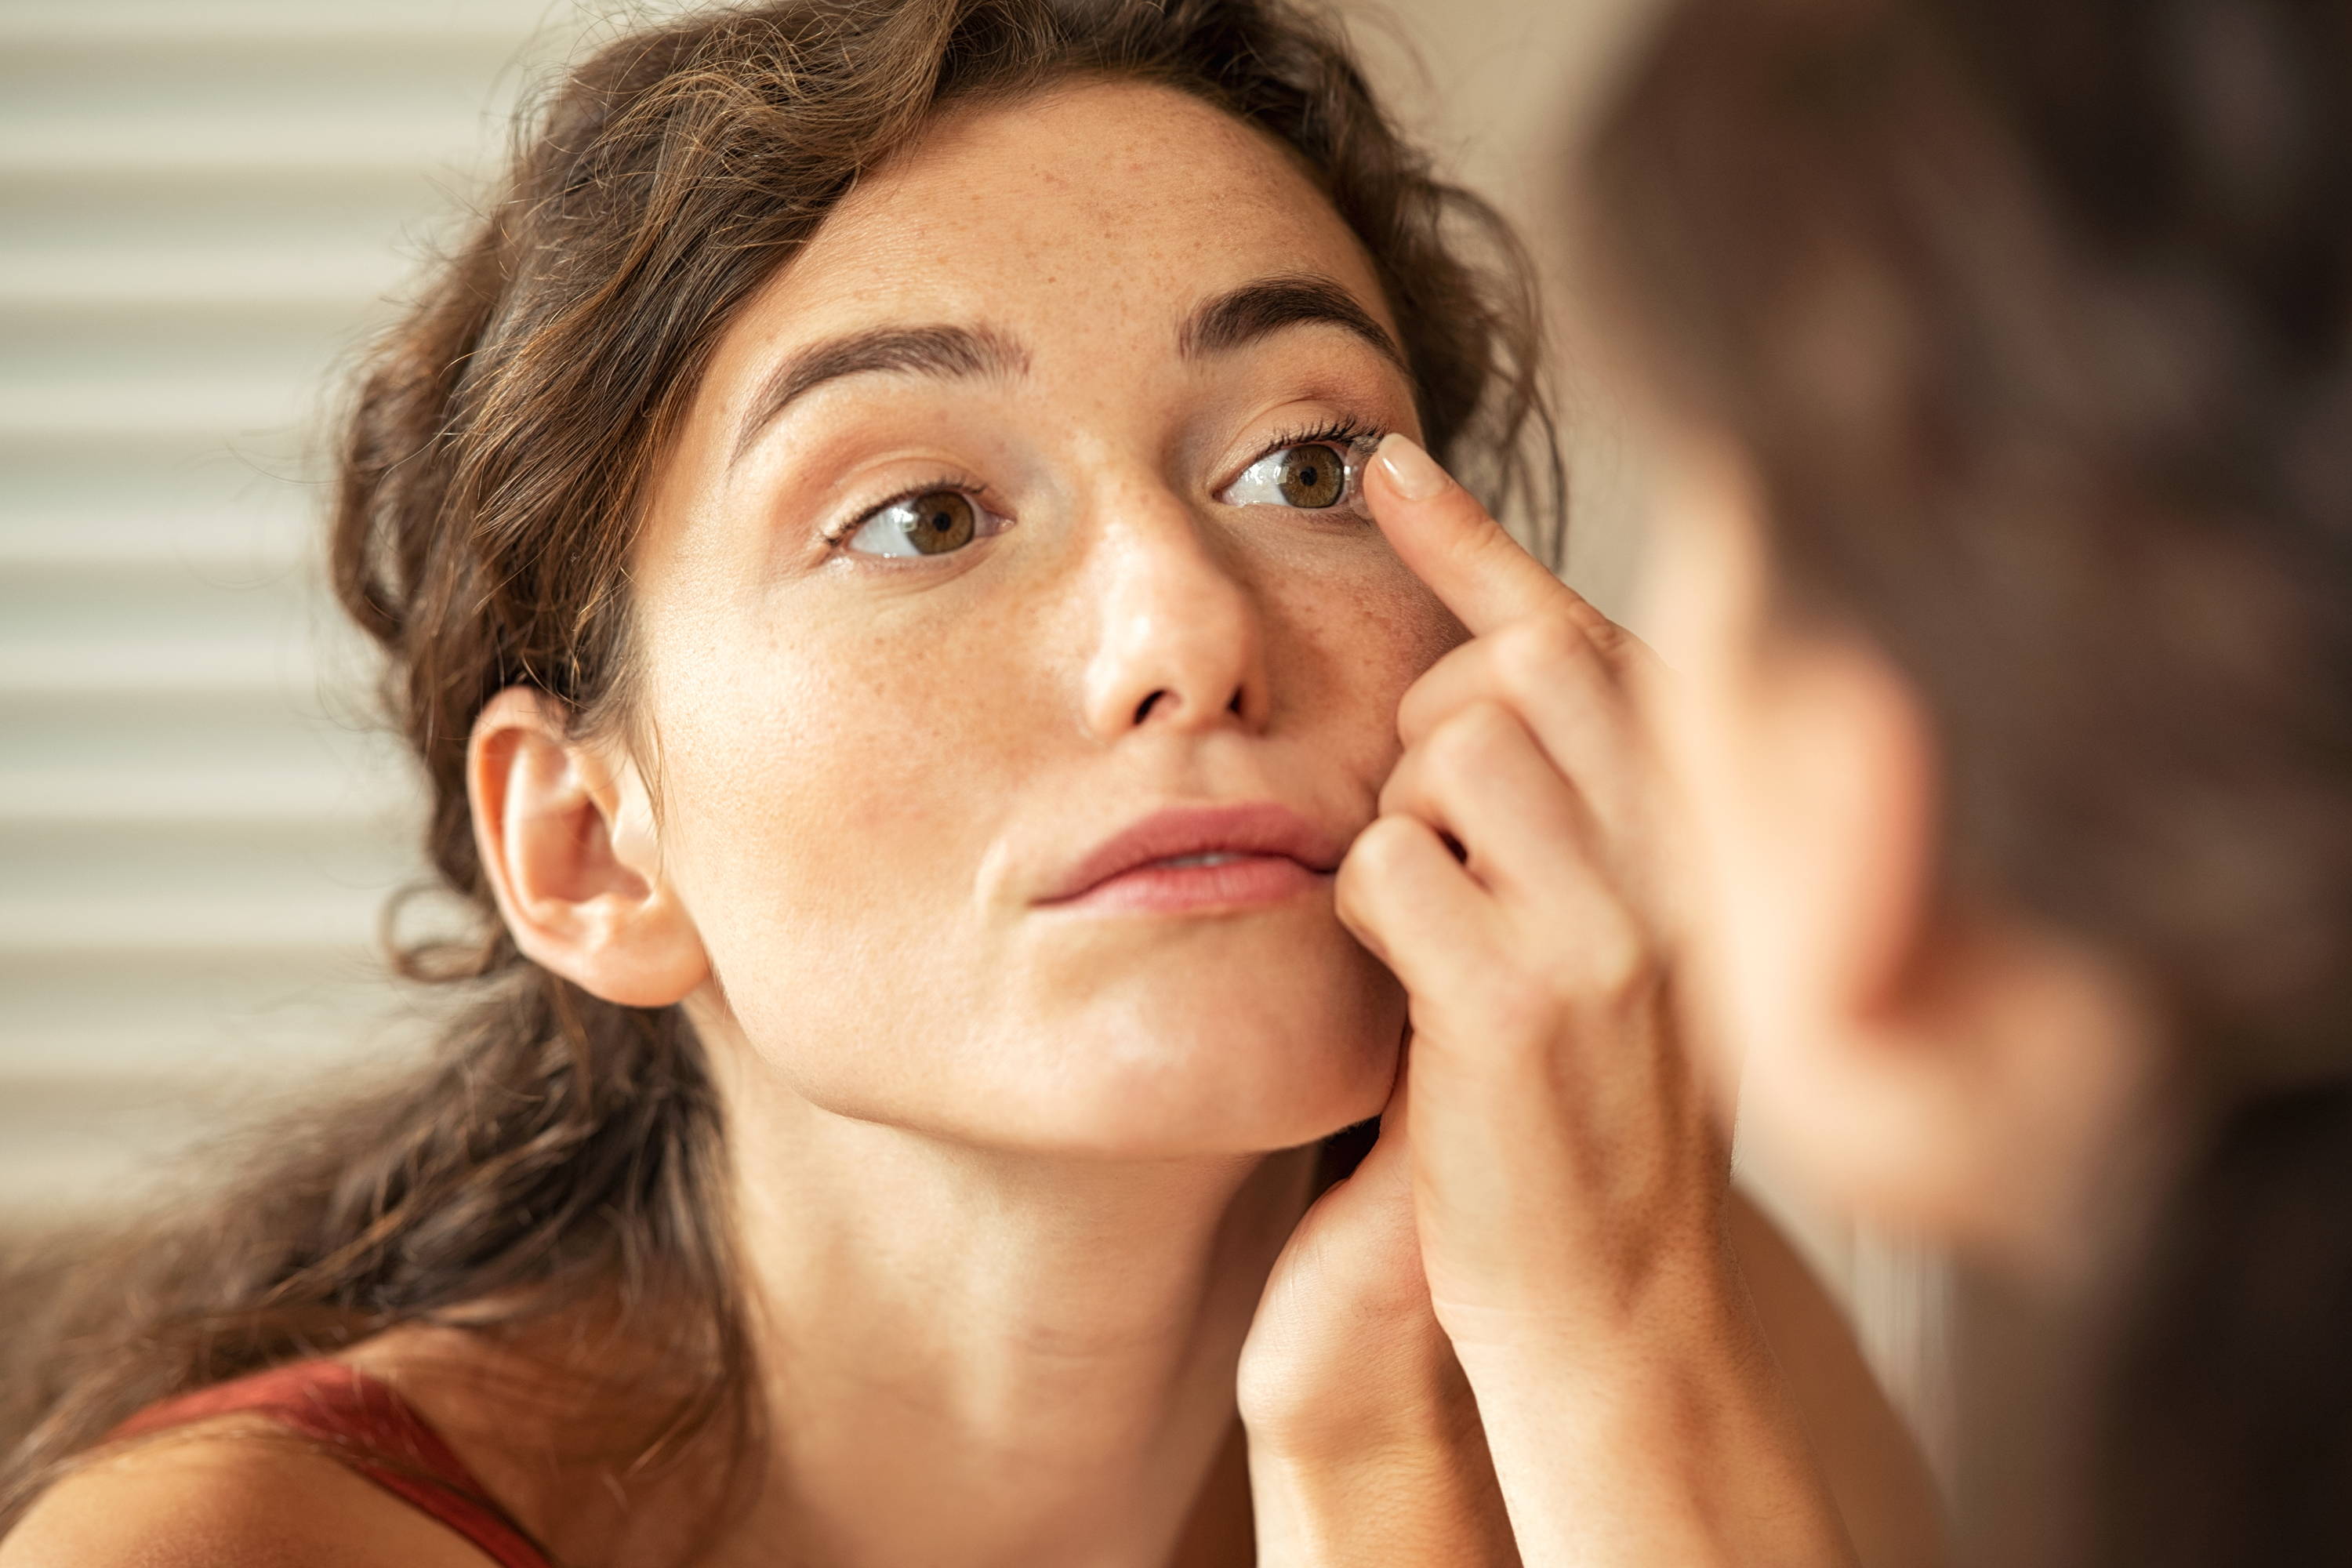 Una mujer joven se mira al espejo mientras cuidadosamente se coloca un lente de contacto.